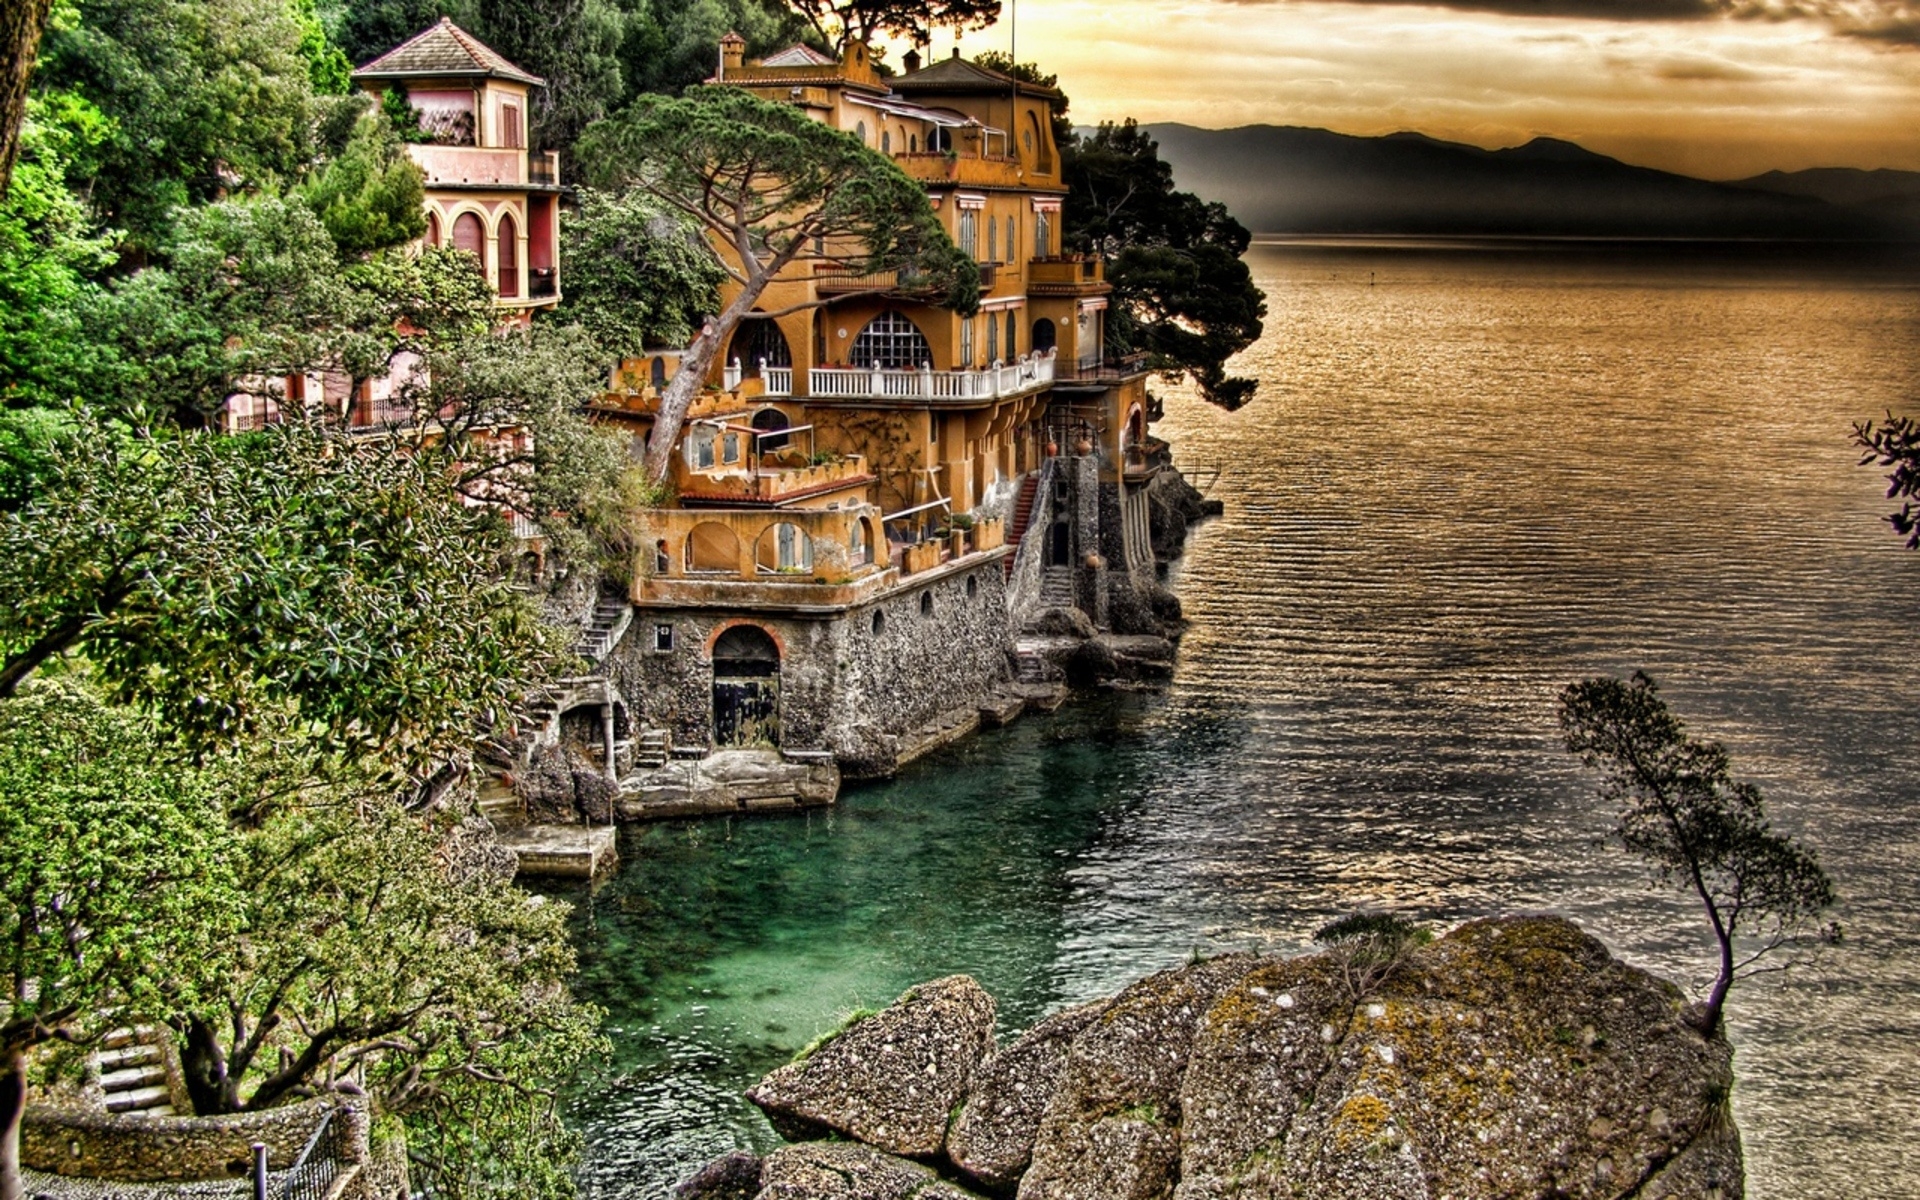 Portofino Coast View for 1920 x 1200 widescreen resolution